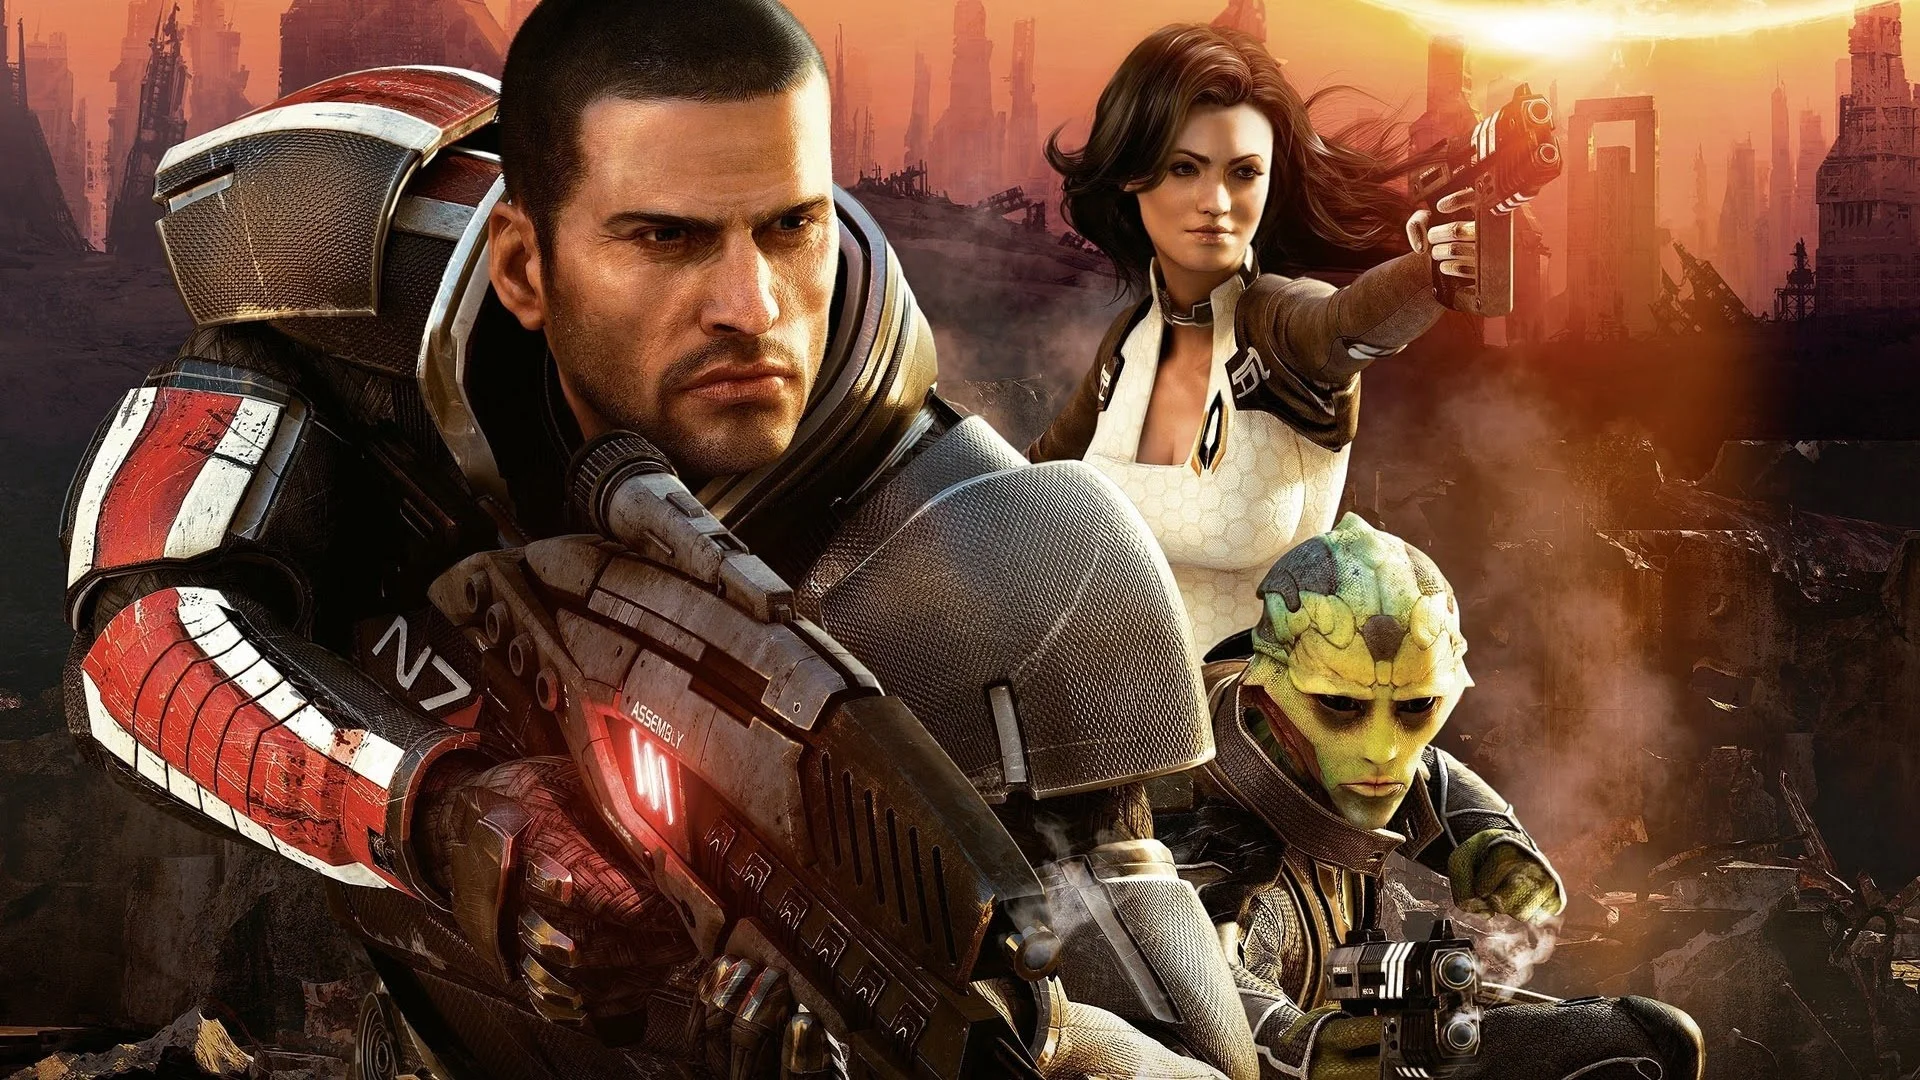 26 января 2010 года вышла Mass Effect 2, последняя однозначно удачная игра BioWare. Уже после нее были и Dragon Age 2, которая во многом уступала первой части, и Mass Effect 3 со спорным финалом, и, конечно, Mass Effect: Andromeda и Anthem. Но в 2010 году все еще верили в то, что BioWare — главная надежда западных RPG.